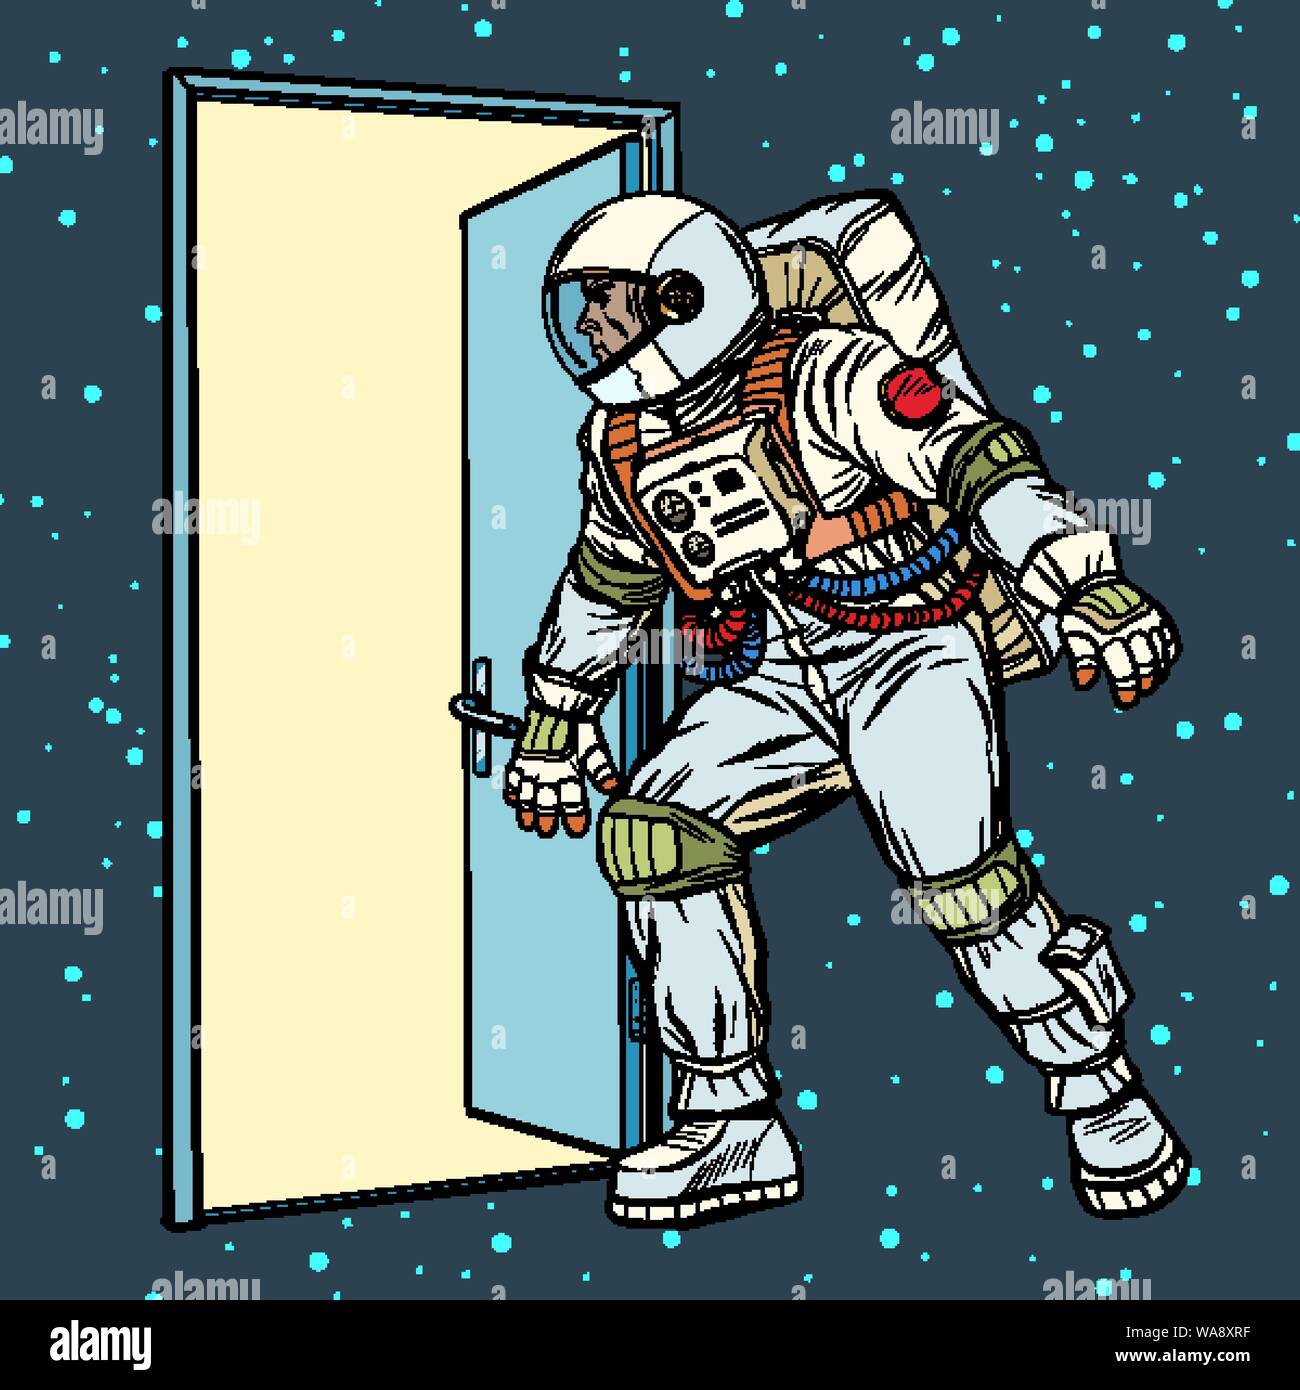 Astronaut öffnet die Tür zum Raum. Pop Art retro Vektor stock Illustration Zeichnung Stock Vektor